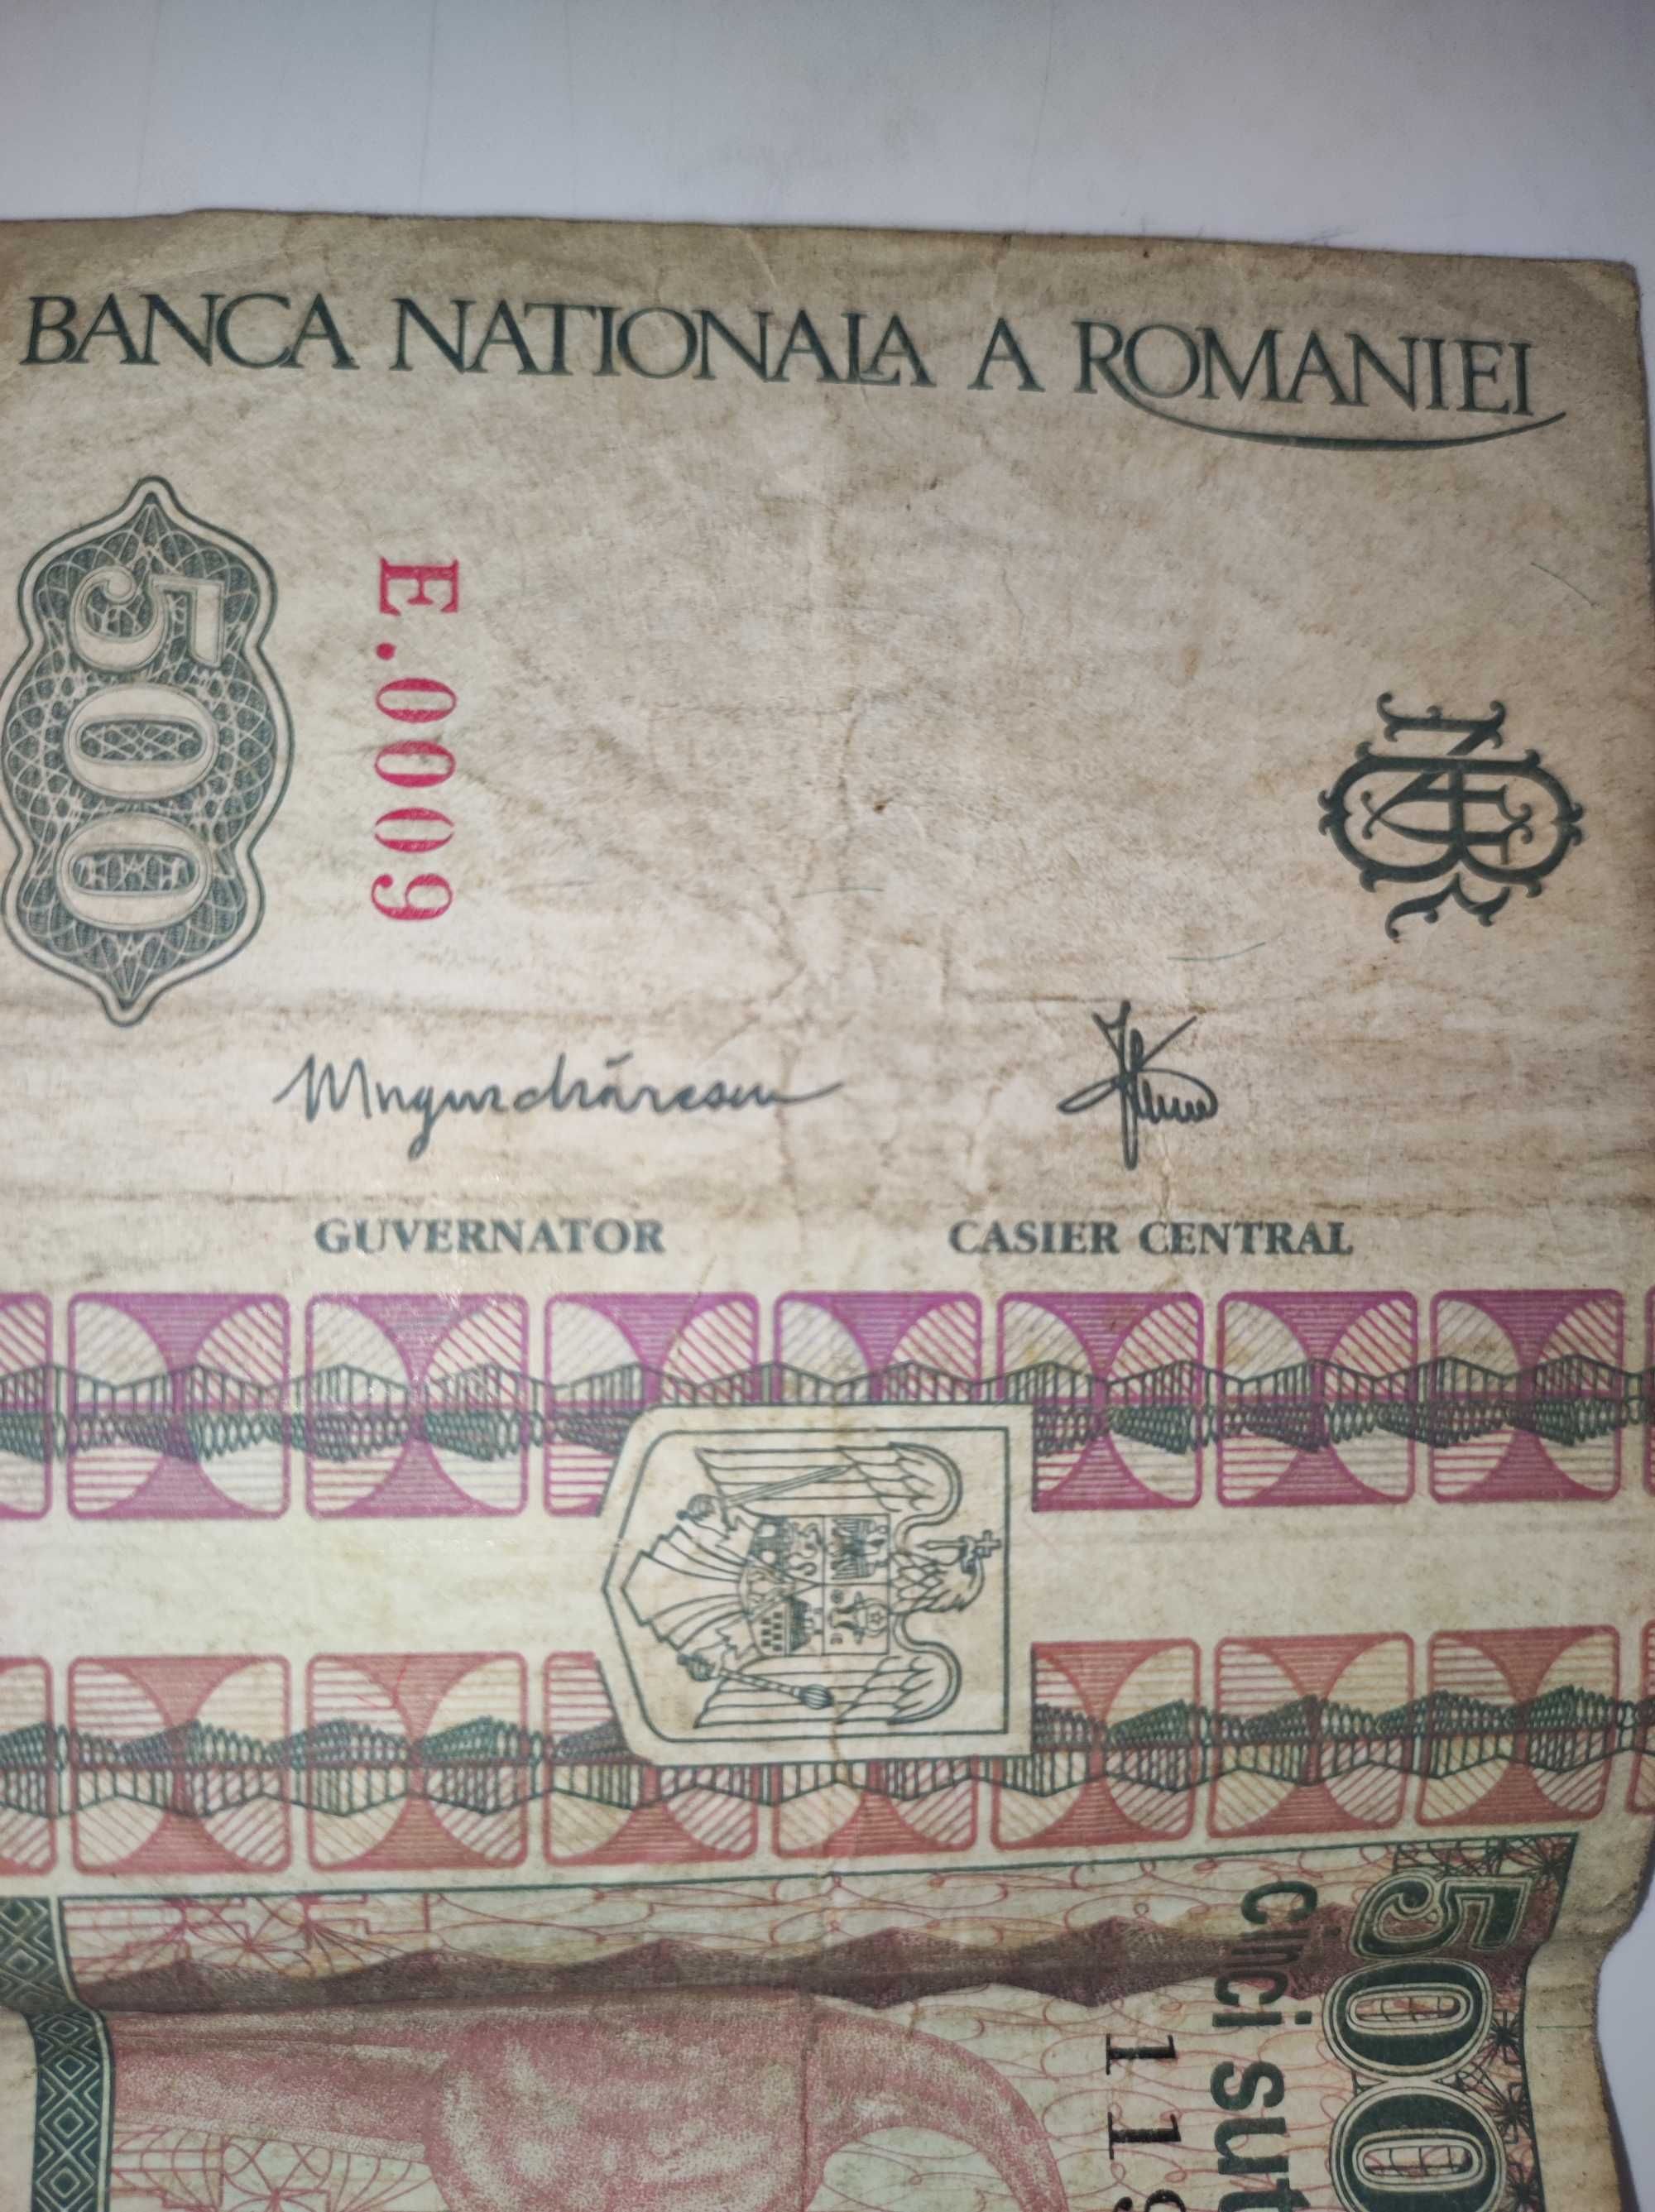 Vând bancnotă de 500 lei cu chipul lui Constantin Brâncuși din 1992